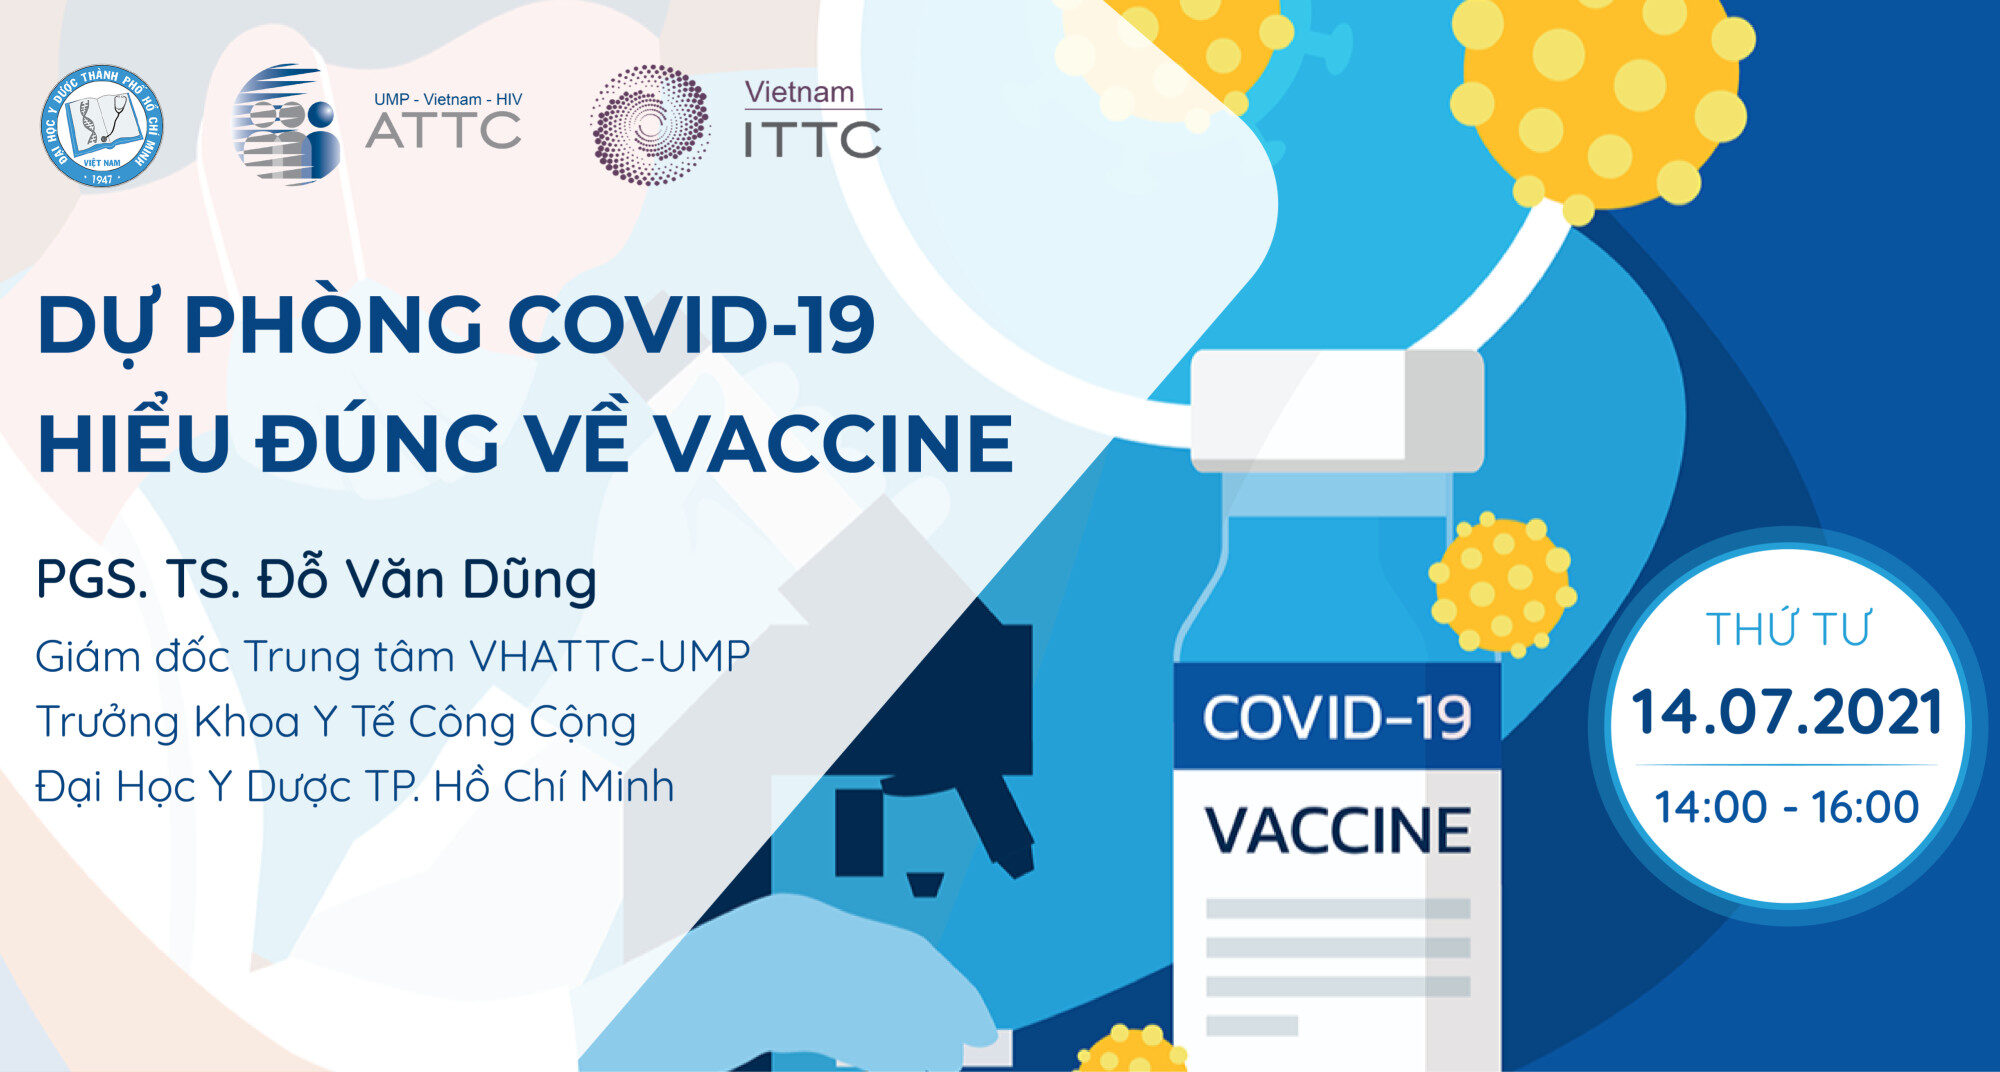 Dự phòng COVID-19 và Hiểu đúng về Vaccine - PGS. TS. BS. Đỗ Văn Dũng